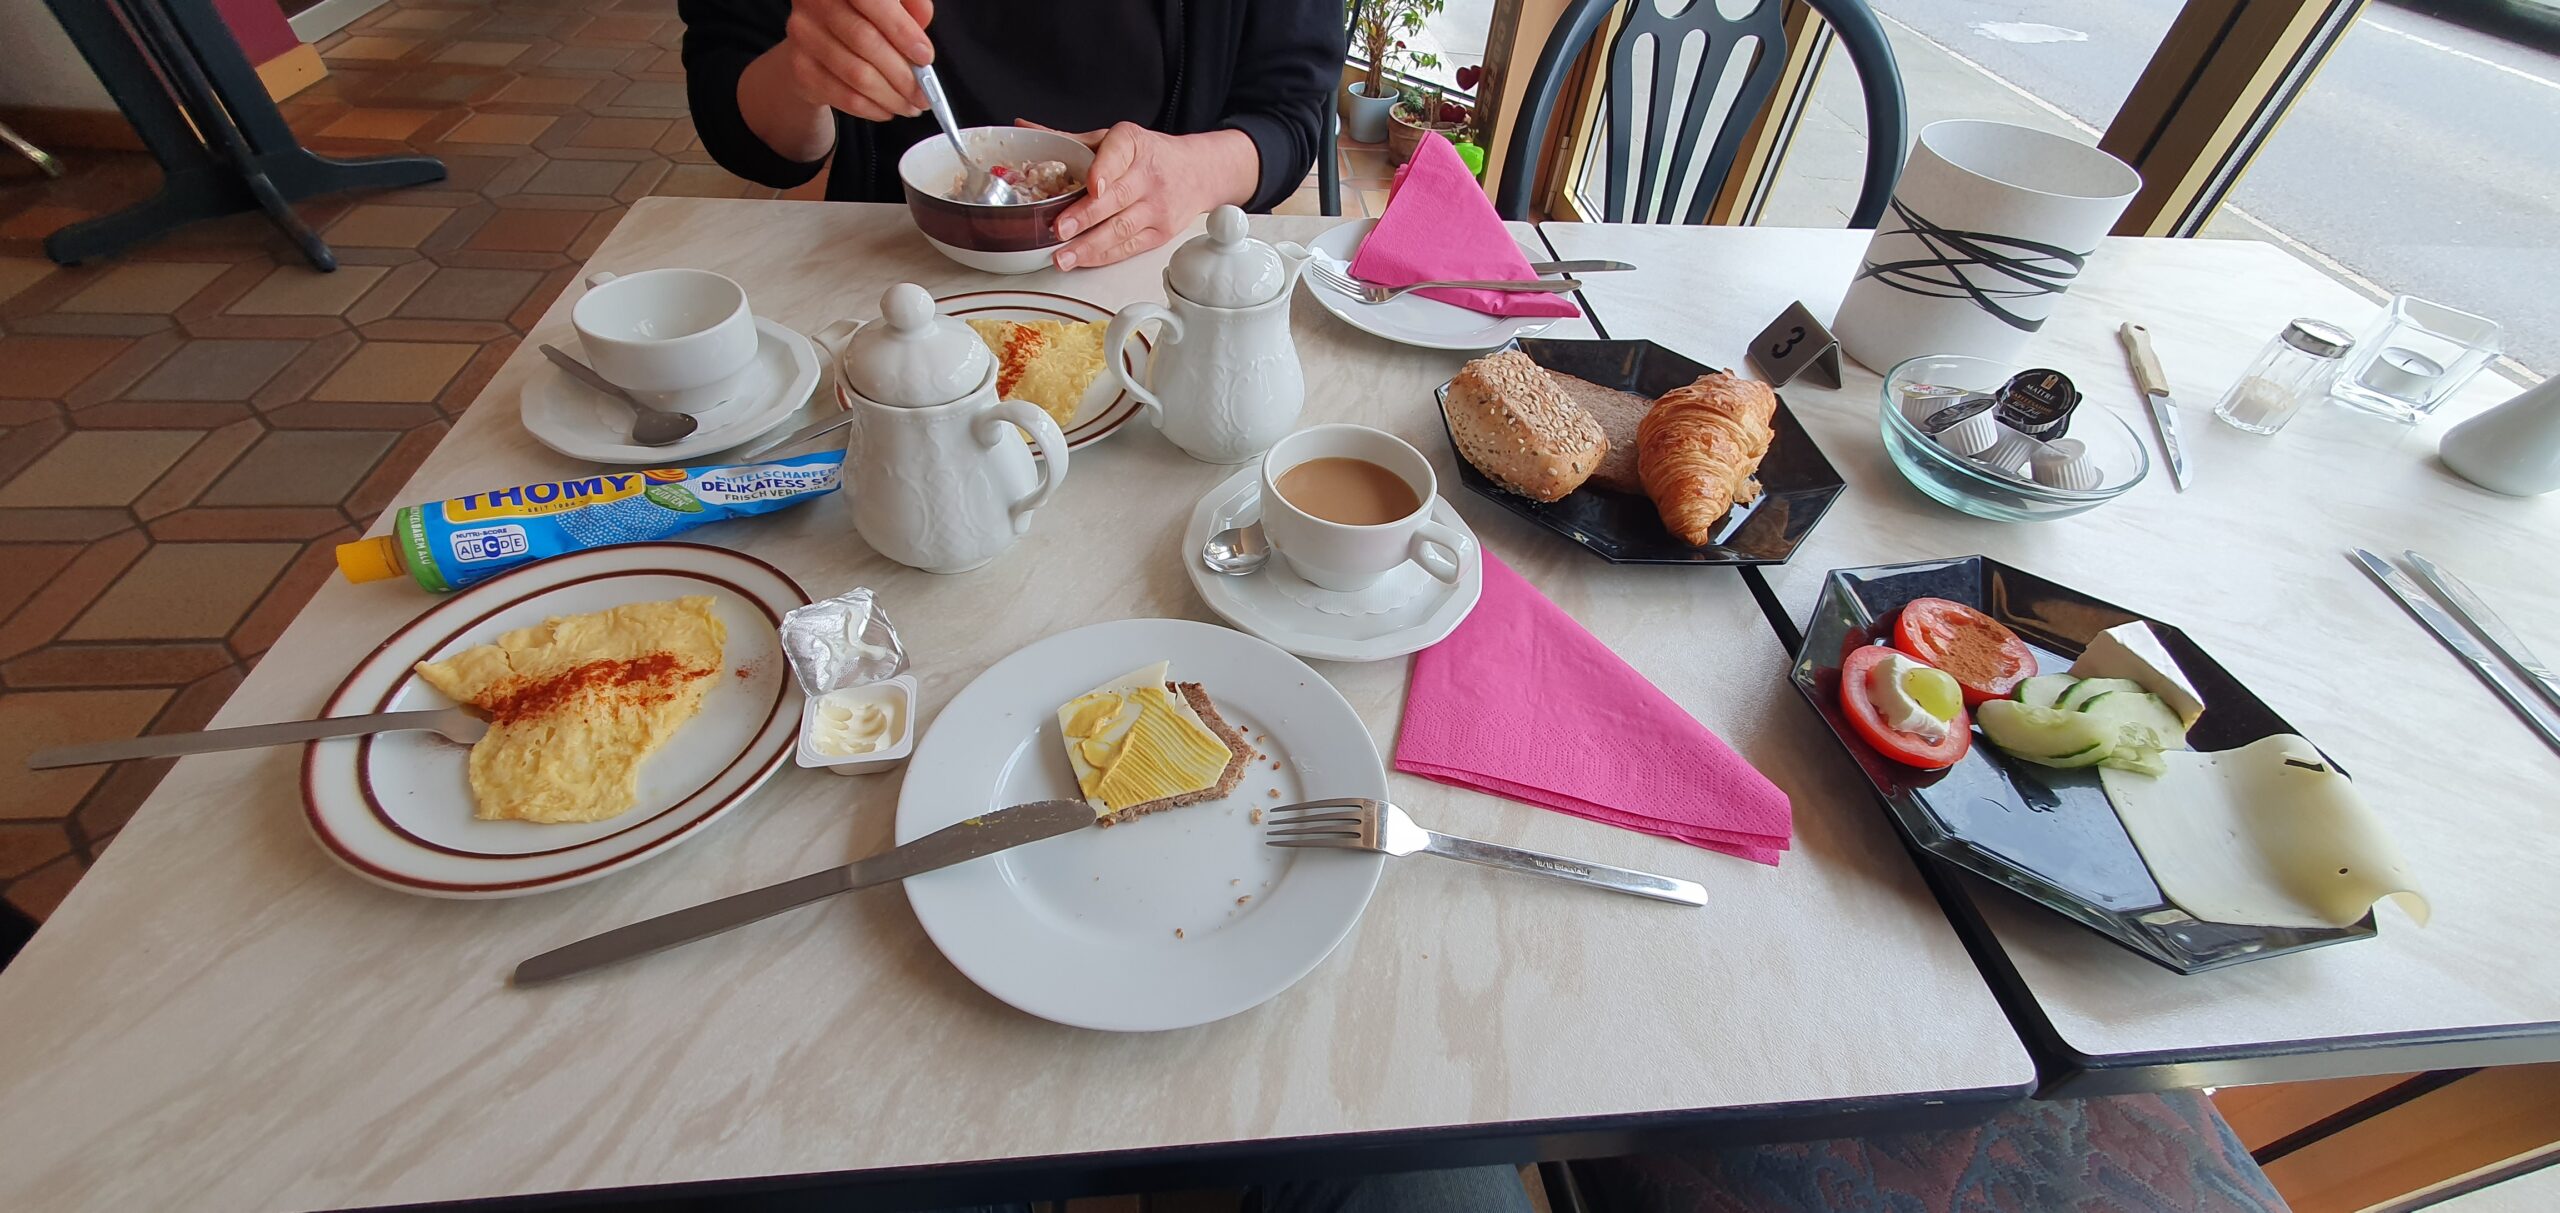 Günstig und lecker Frühstücken in Rheinbach bei Bonn